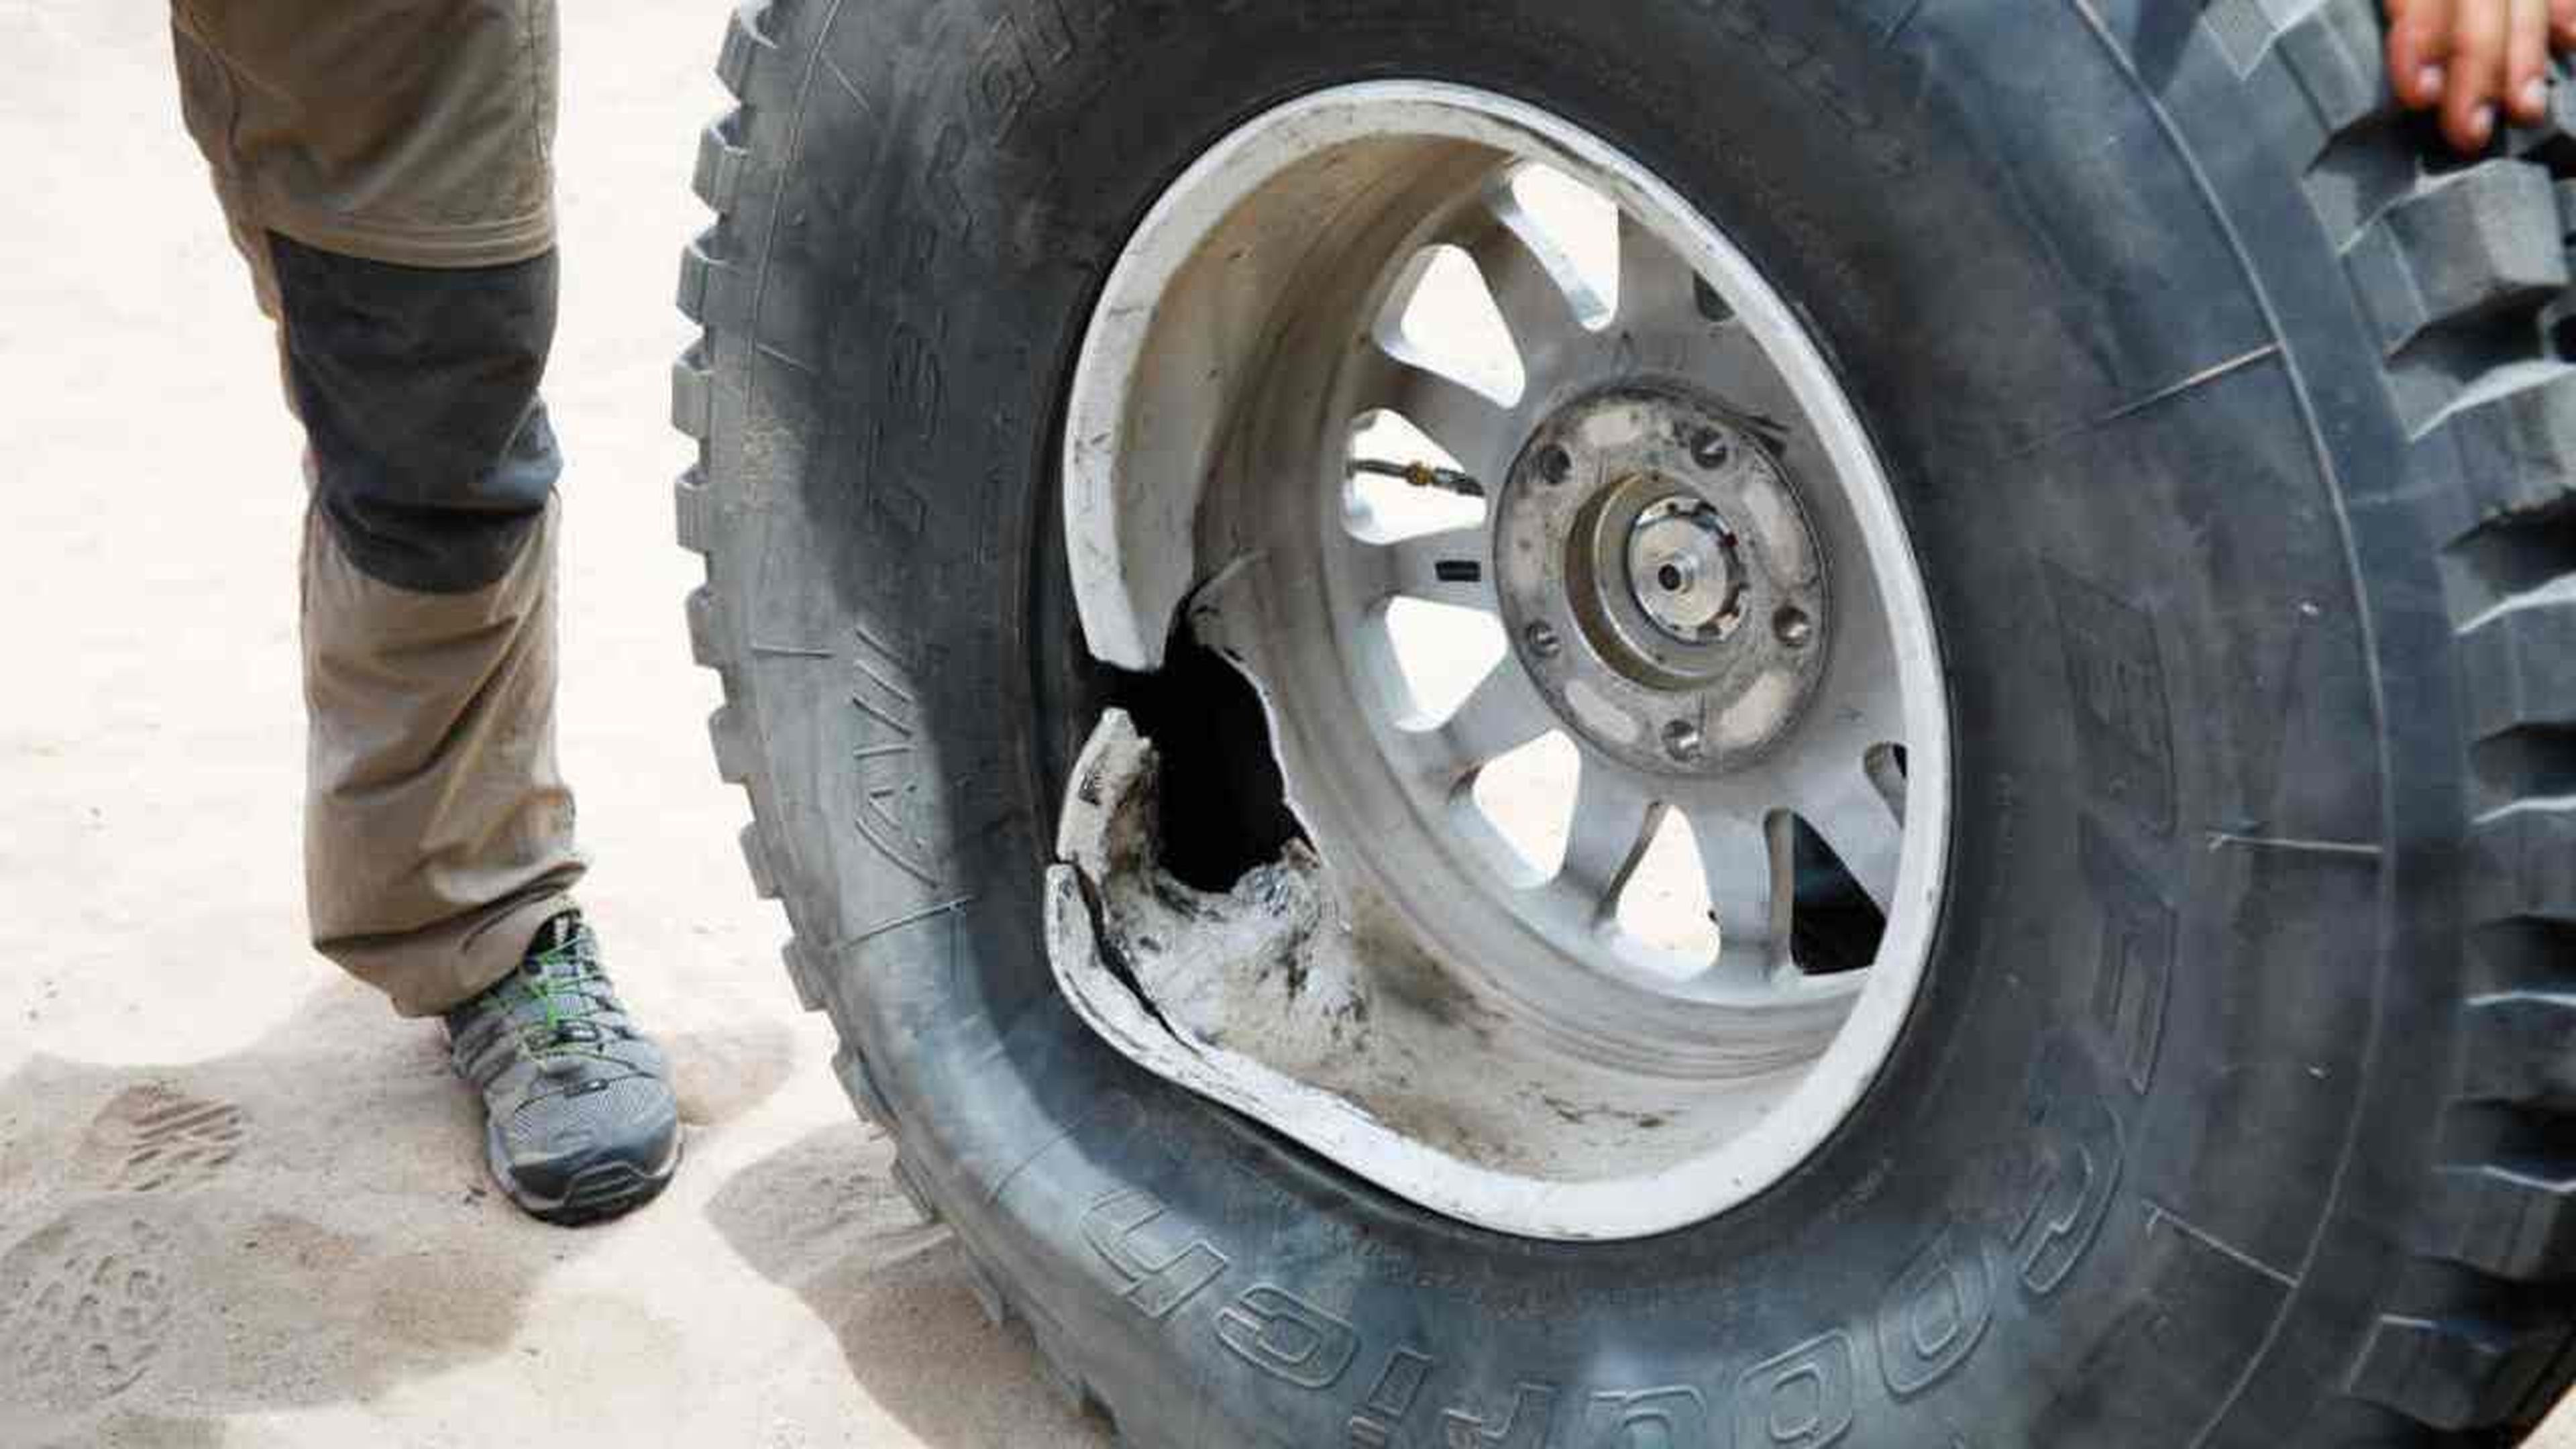 Accidente de Carlos Sainz en el Dakar 2019